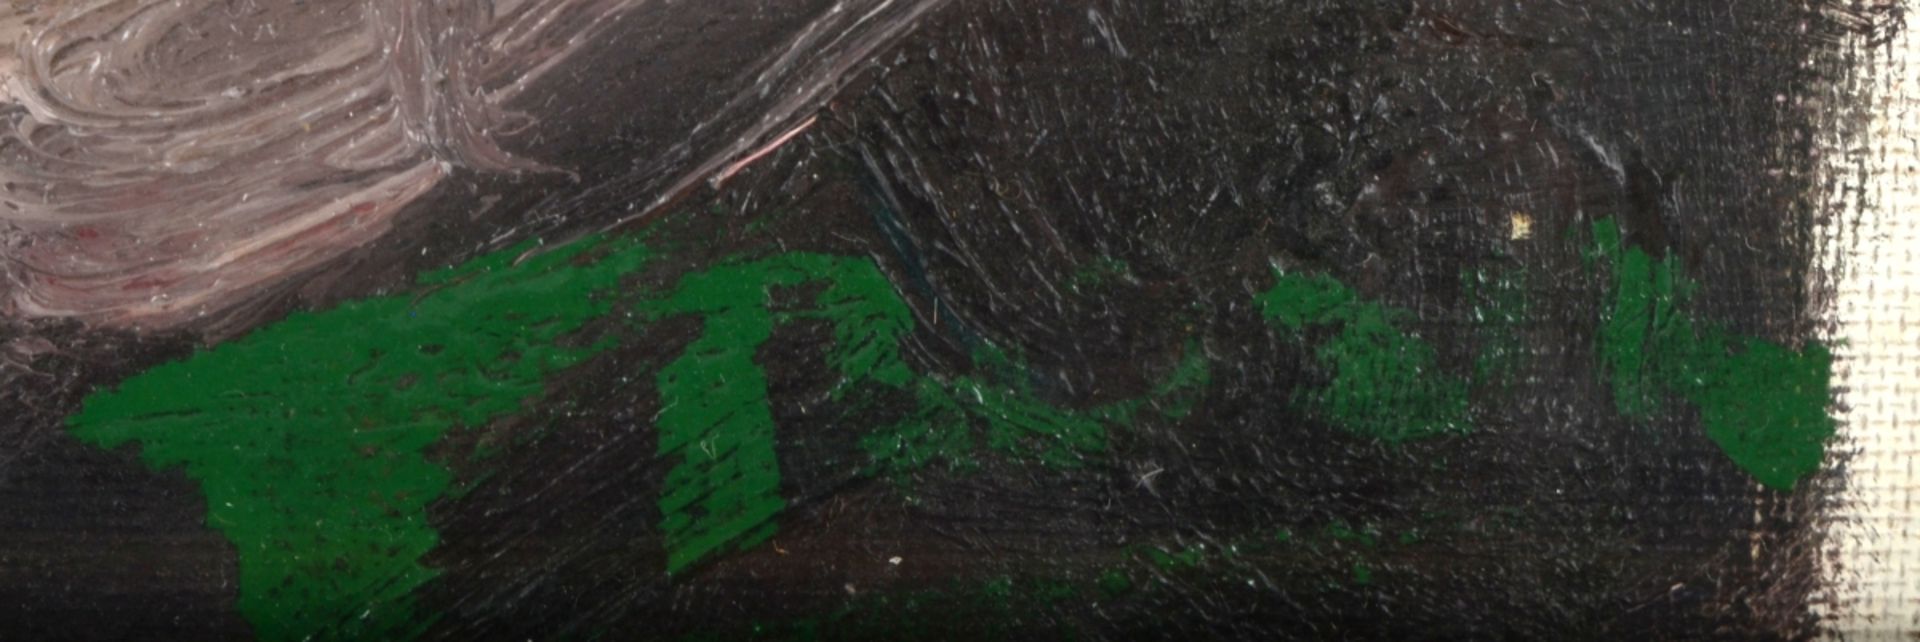 Undeutlich signiert Öl/Lwd., weiblicher Rückenakt, rechts unten signiert, provisorisch hinter Glas - Bild 4 aus 4